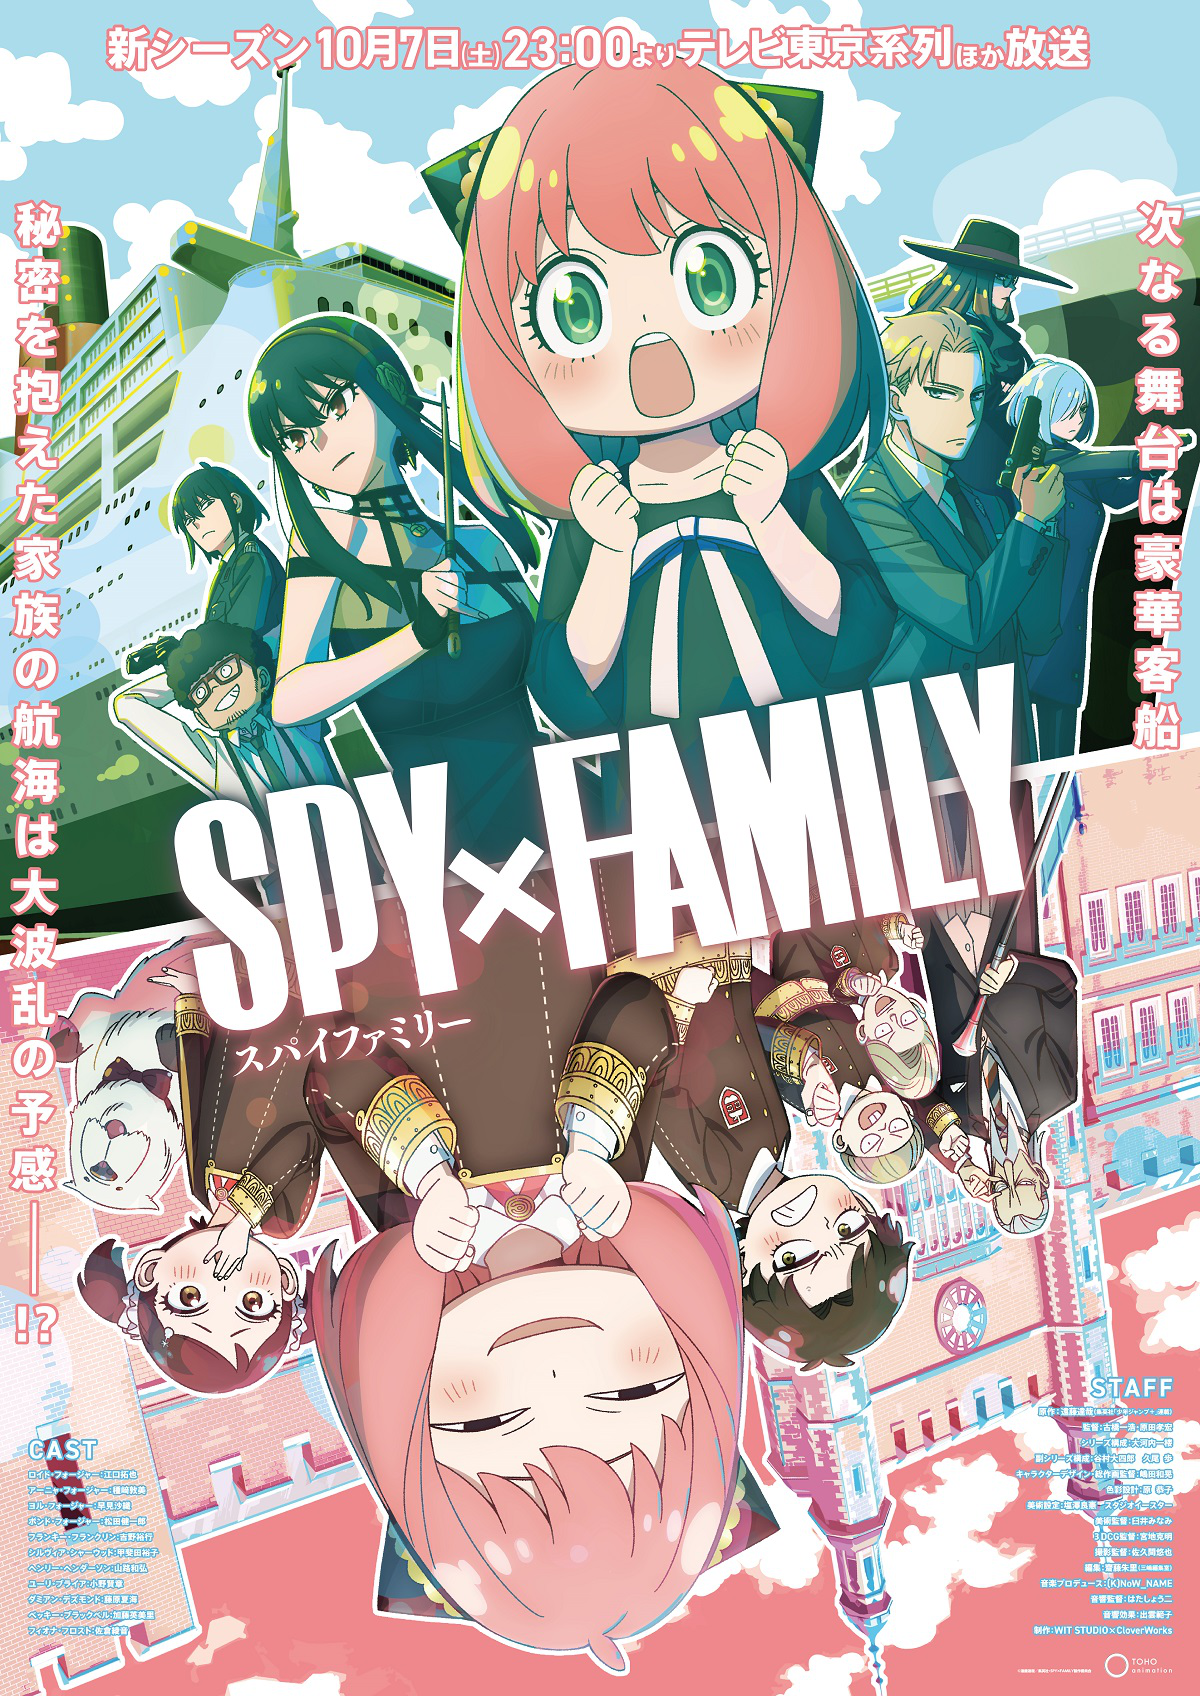 SPY x FAMILY Season 2, Spy x Family Wiki